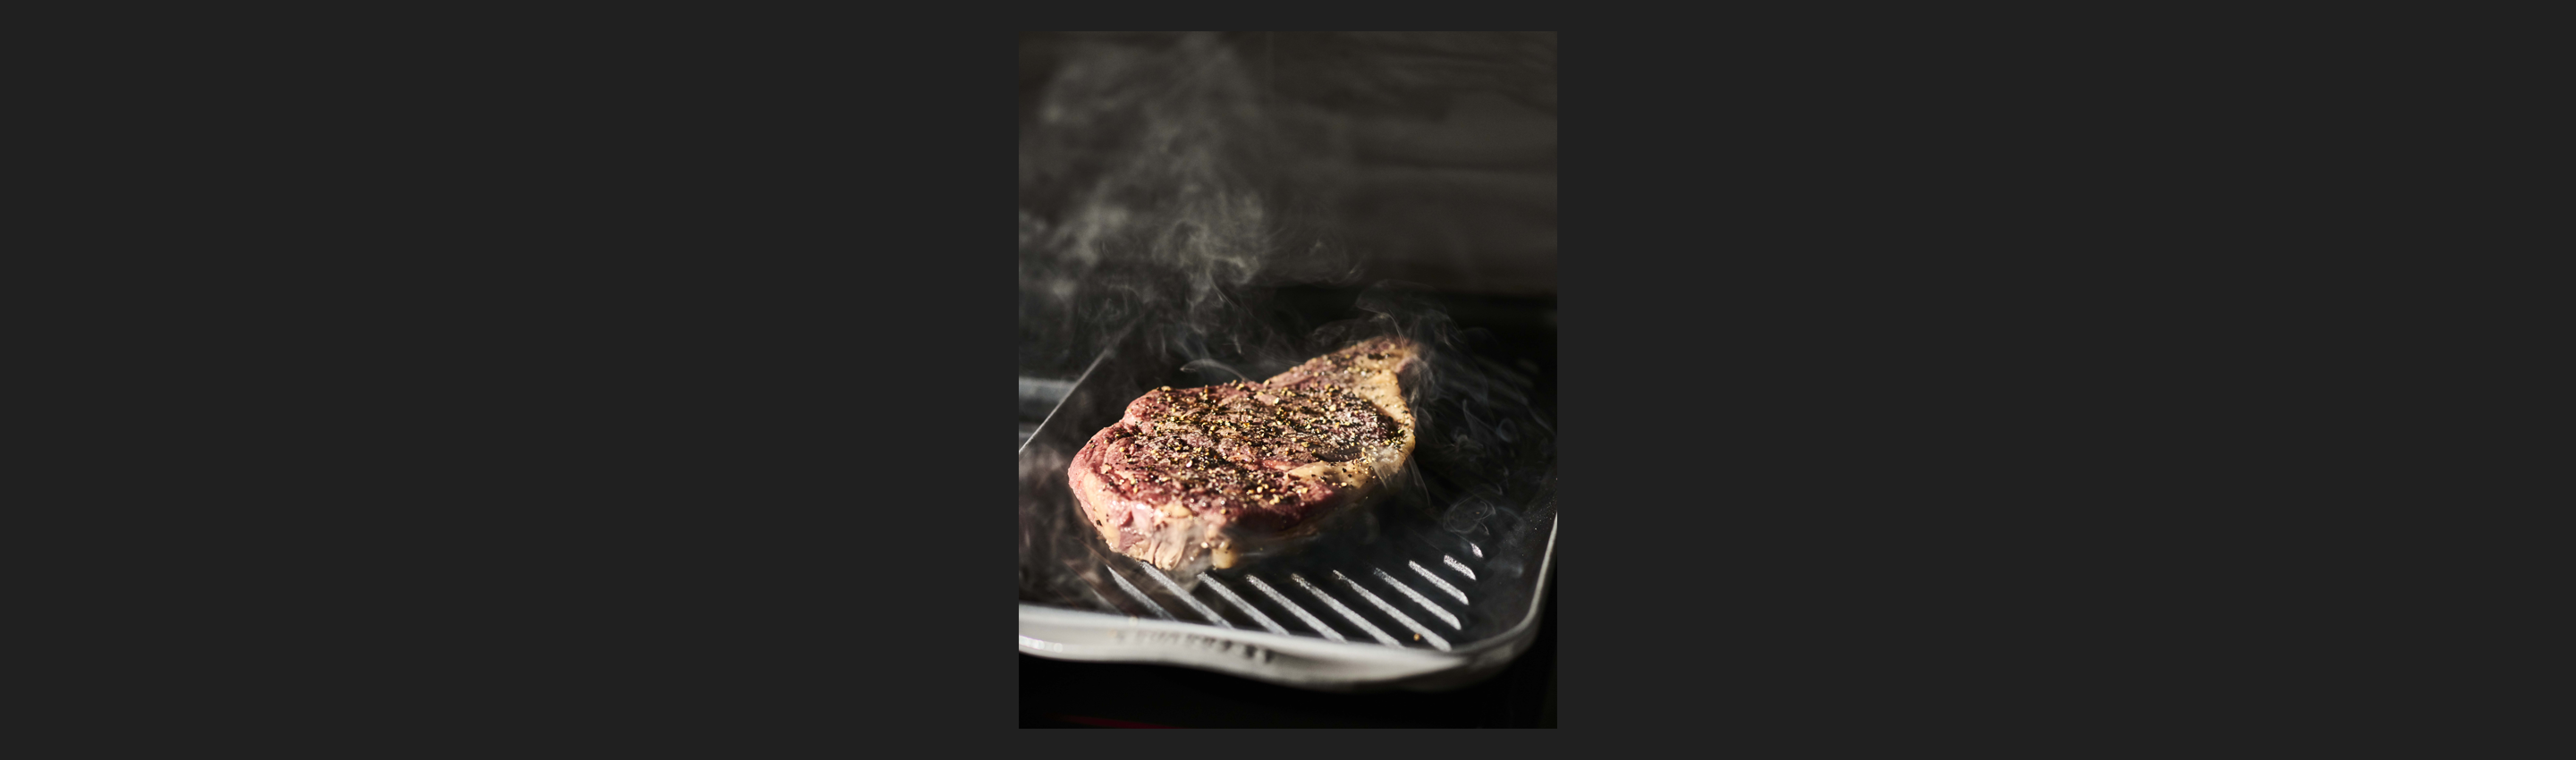 Sous Vide Steak on 48" Dual Fuel Range by Signature Kitchen Suite